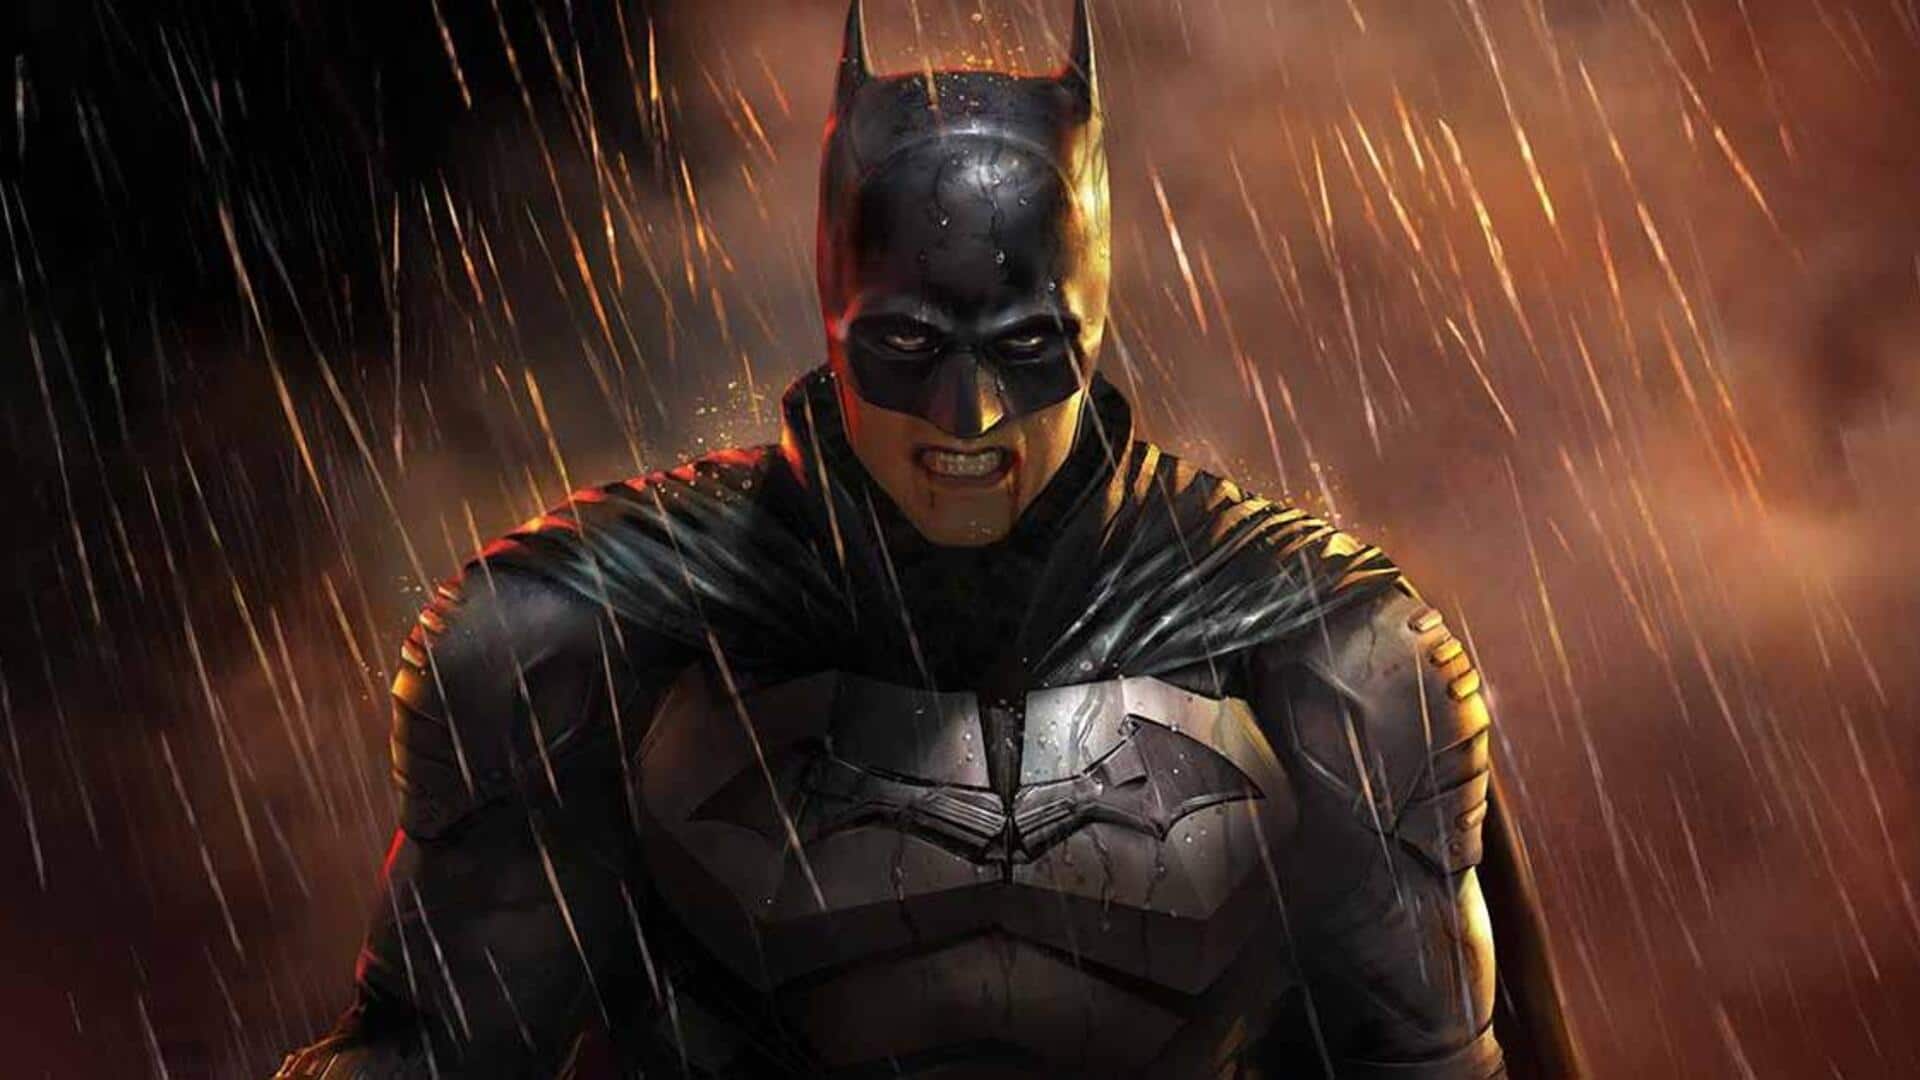 'The Dark Knight' to 'Batman Returns': Best 'Batman' movies